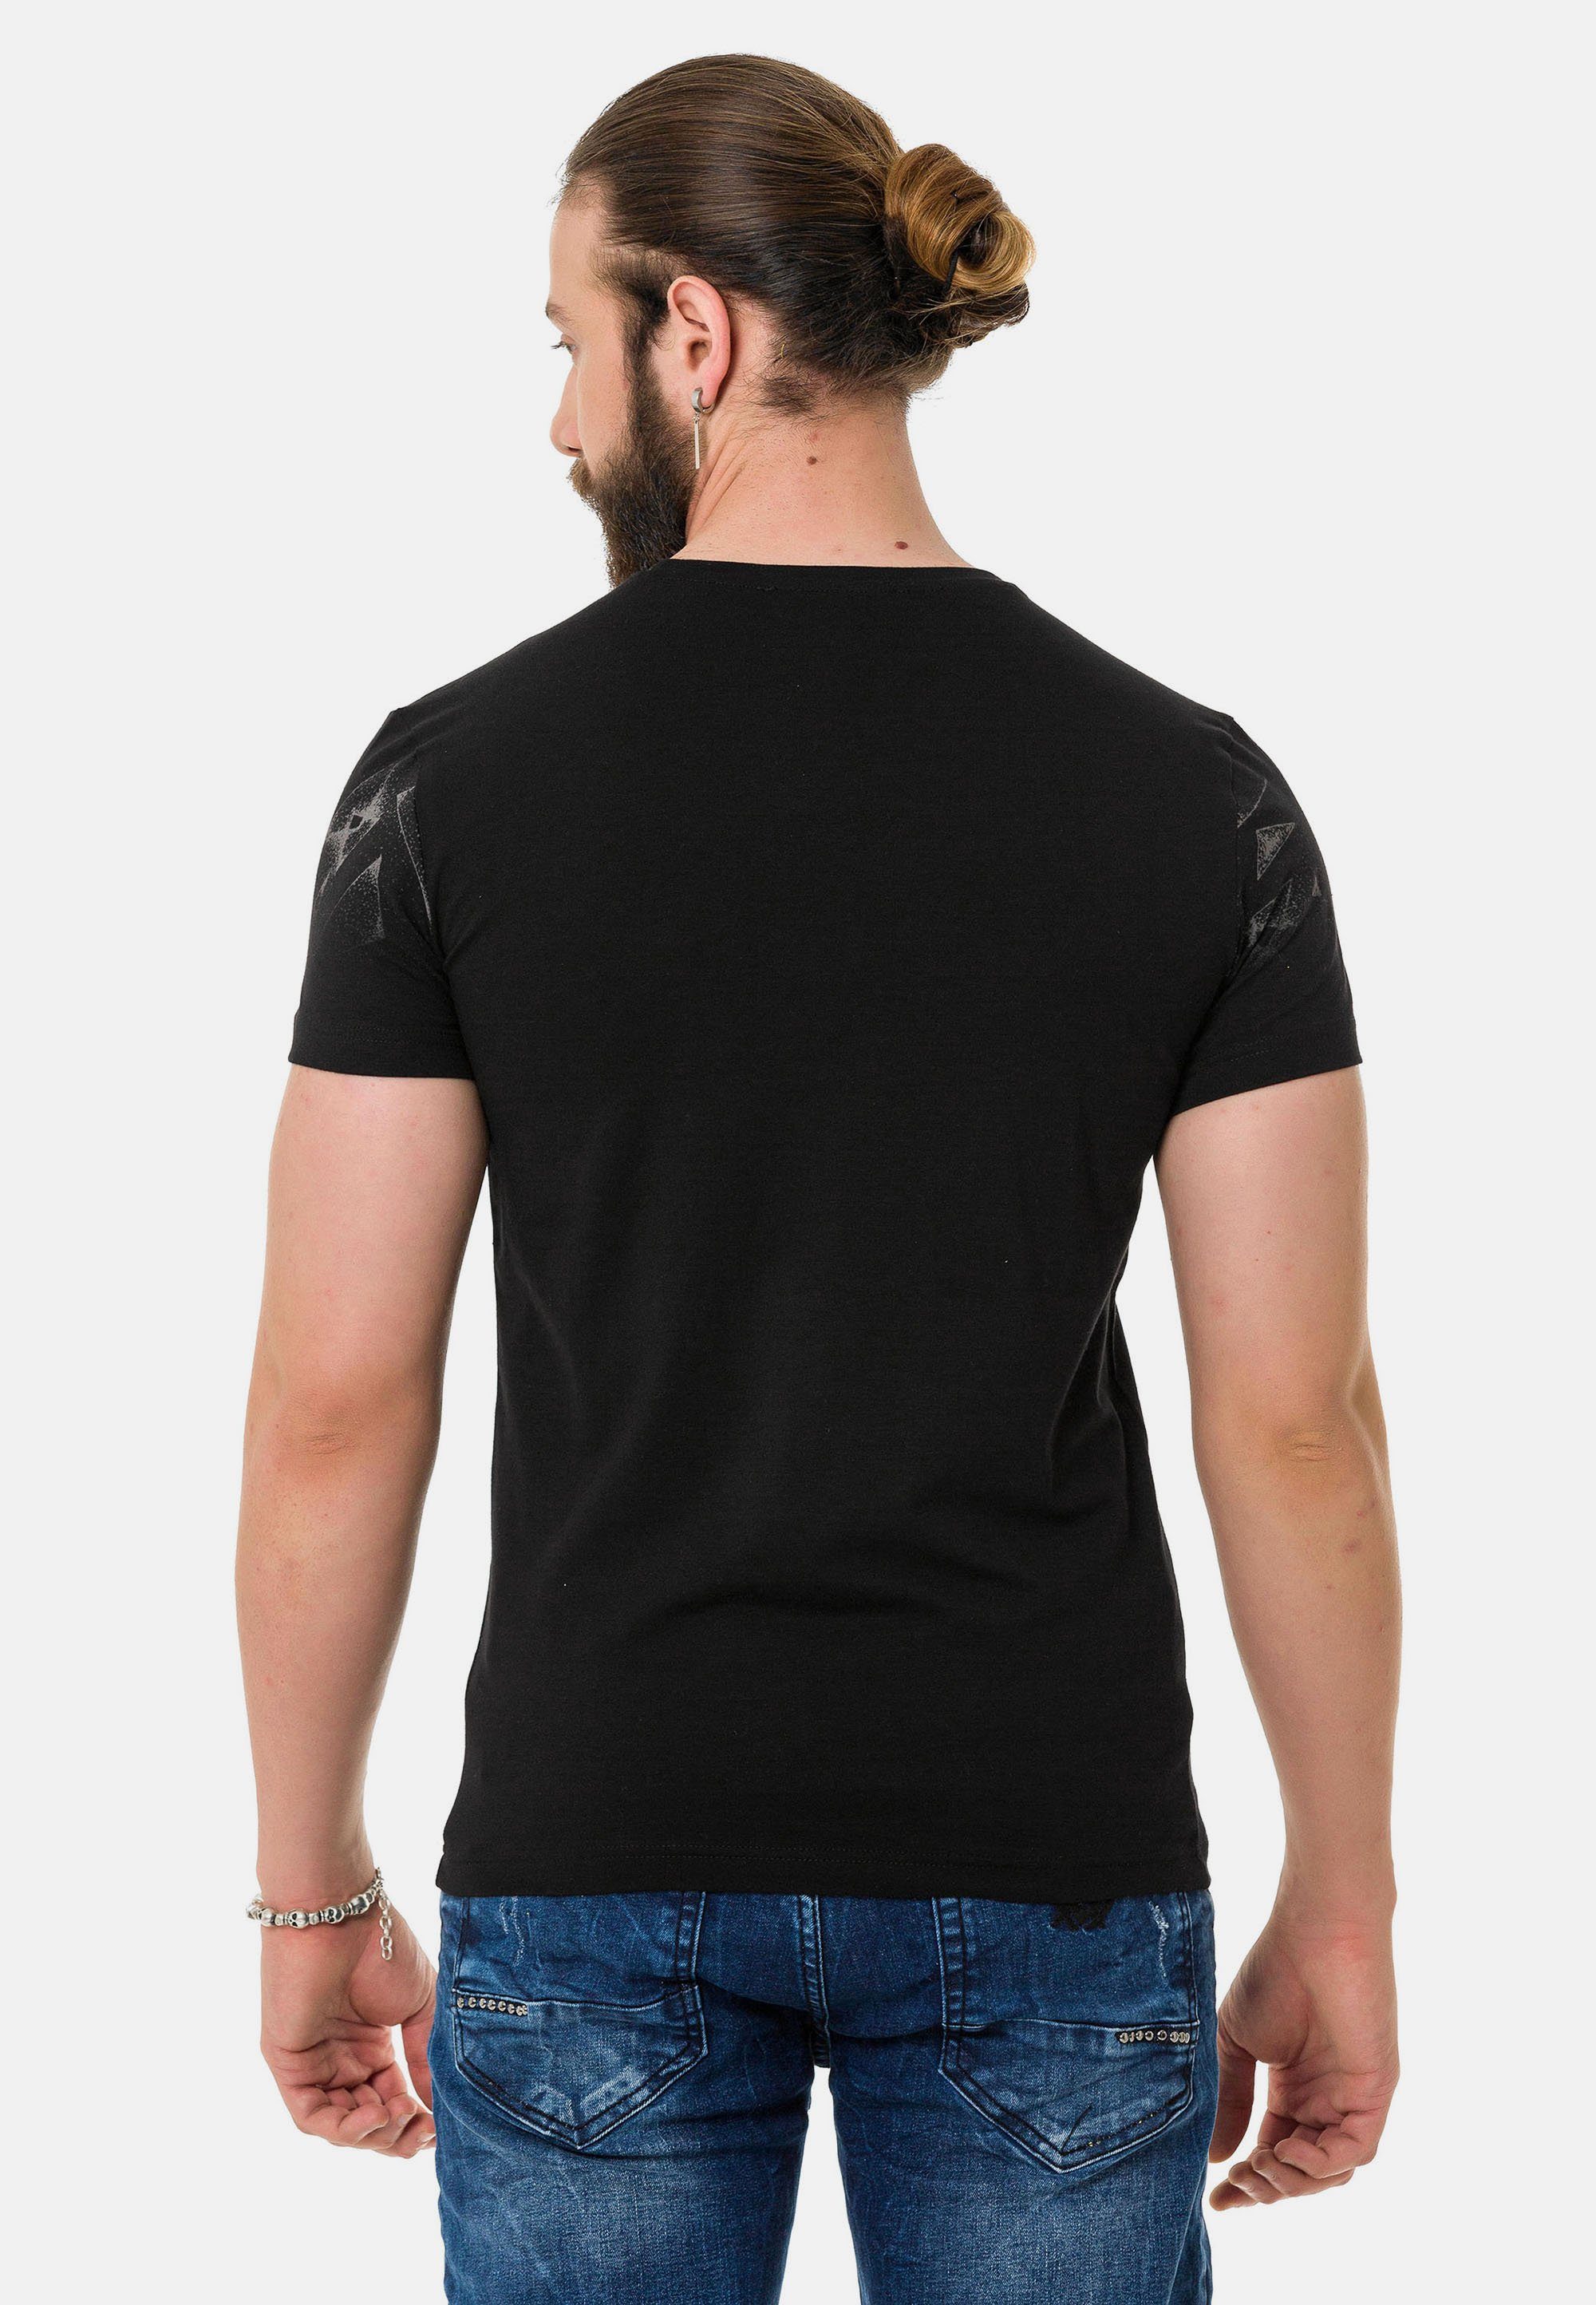 & schwarz in Cipo T-Shirt Baxx coolem Brustprint